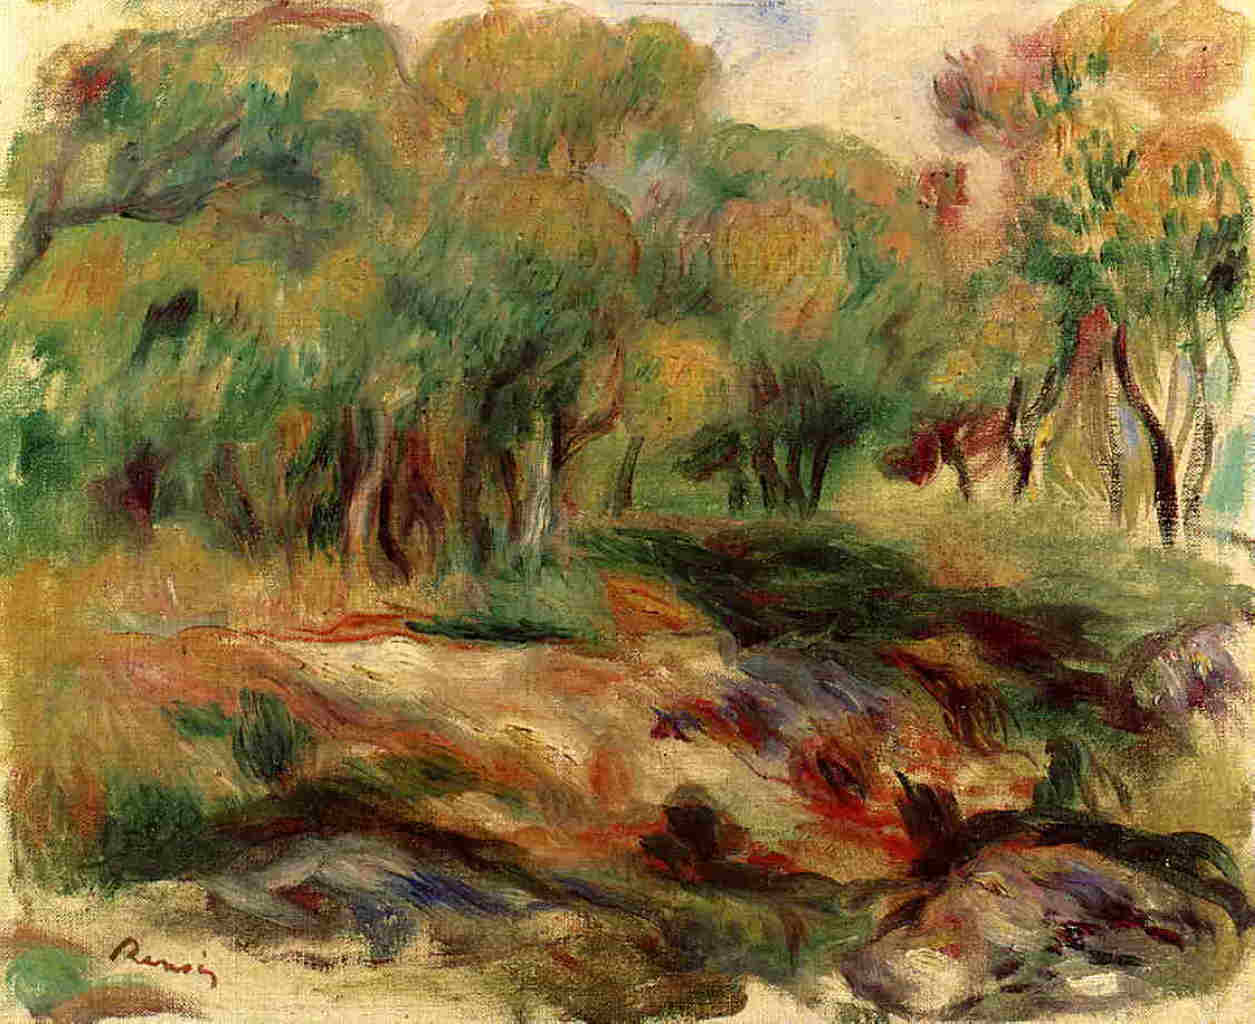 Pierre+Auguste+Renoir-1841-1-19 (526).jpg